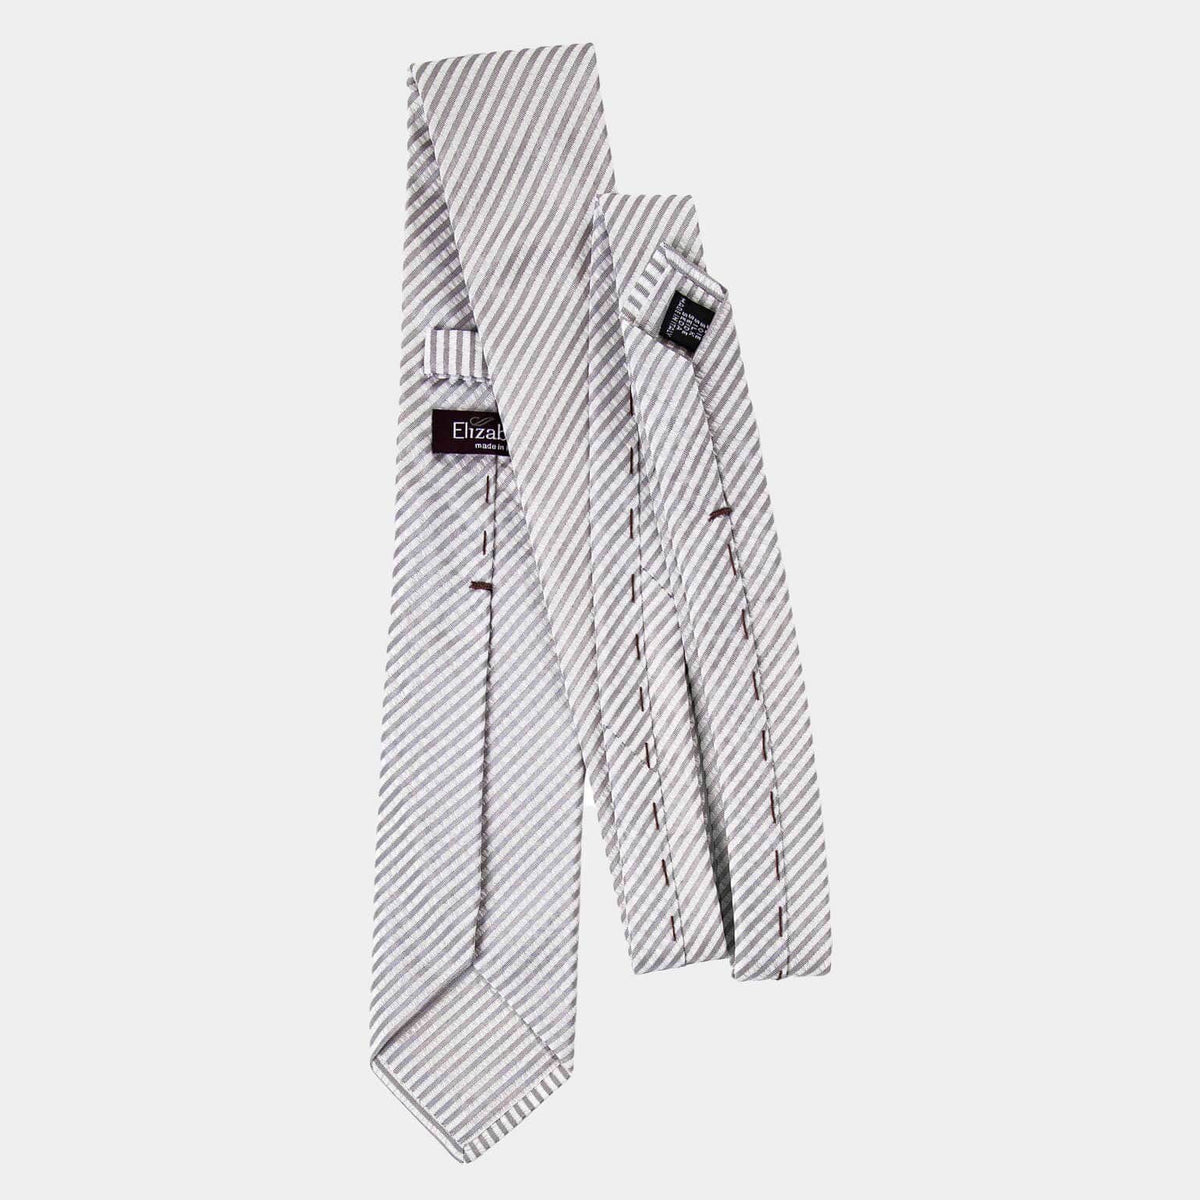 Seersucker necktie